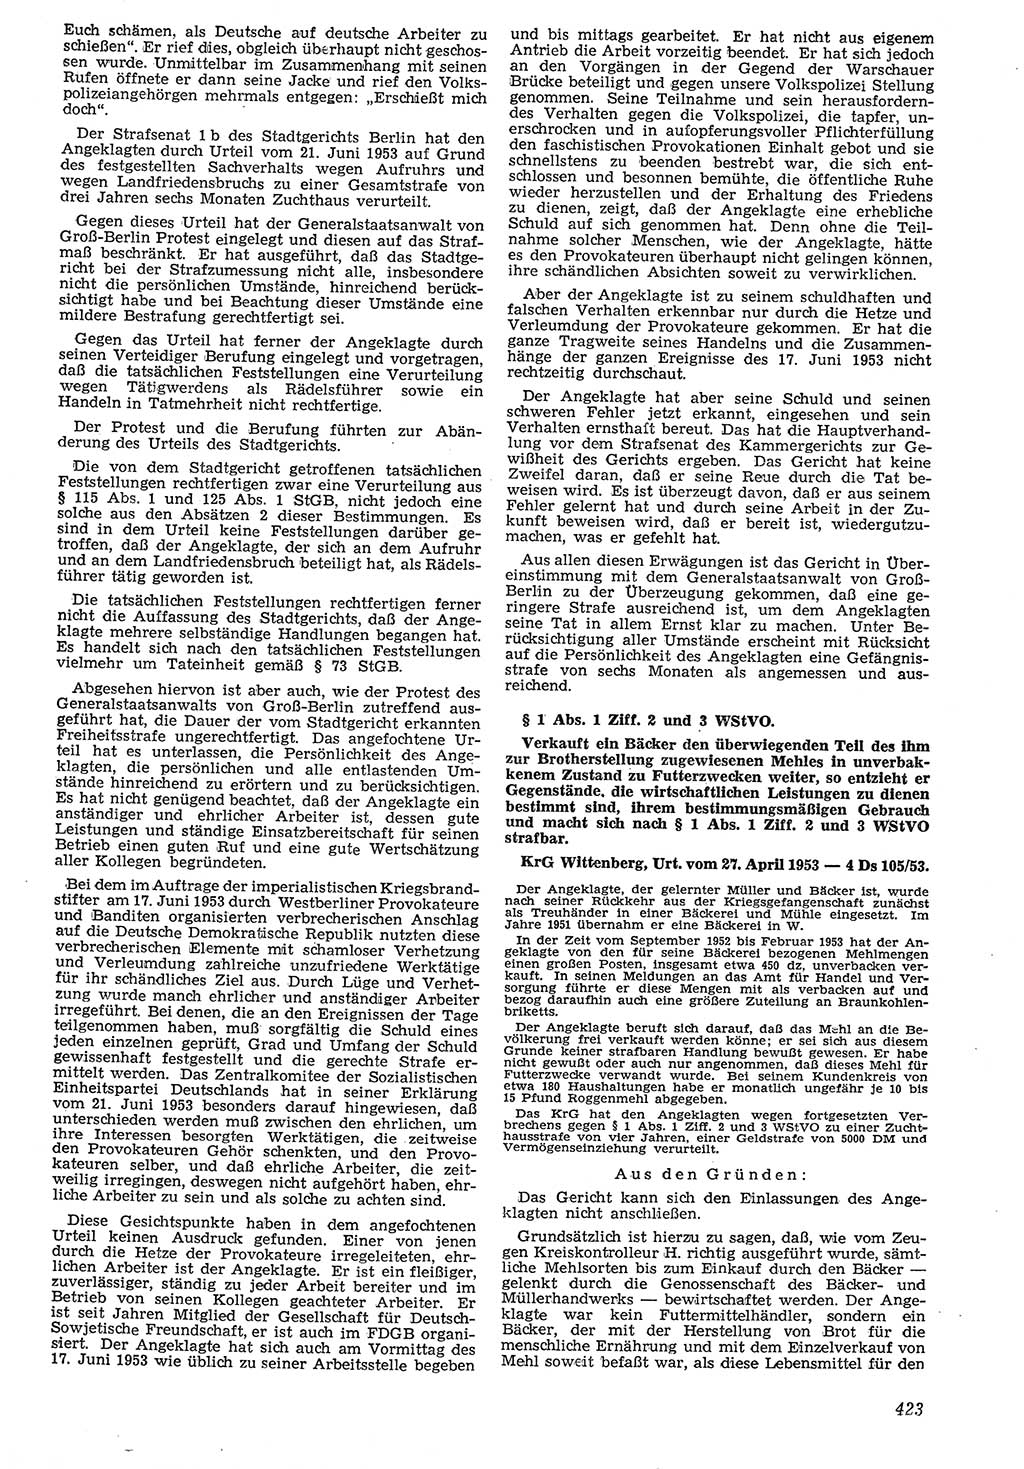 Neue Justiz (NJ), Zeitschrift für Recht und Rechtswissenschaft [Deutsche Demokratische Republik (DDR)], 7. Jahrgang 1953, Seite 423 (NJ DDR 1953, S. 423)